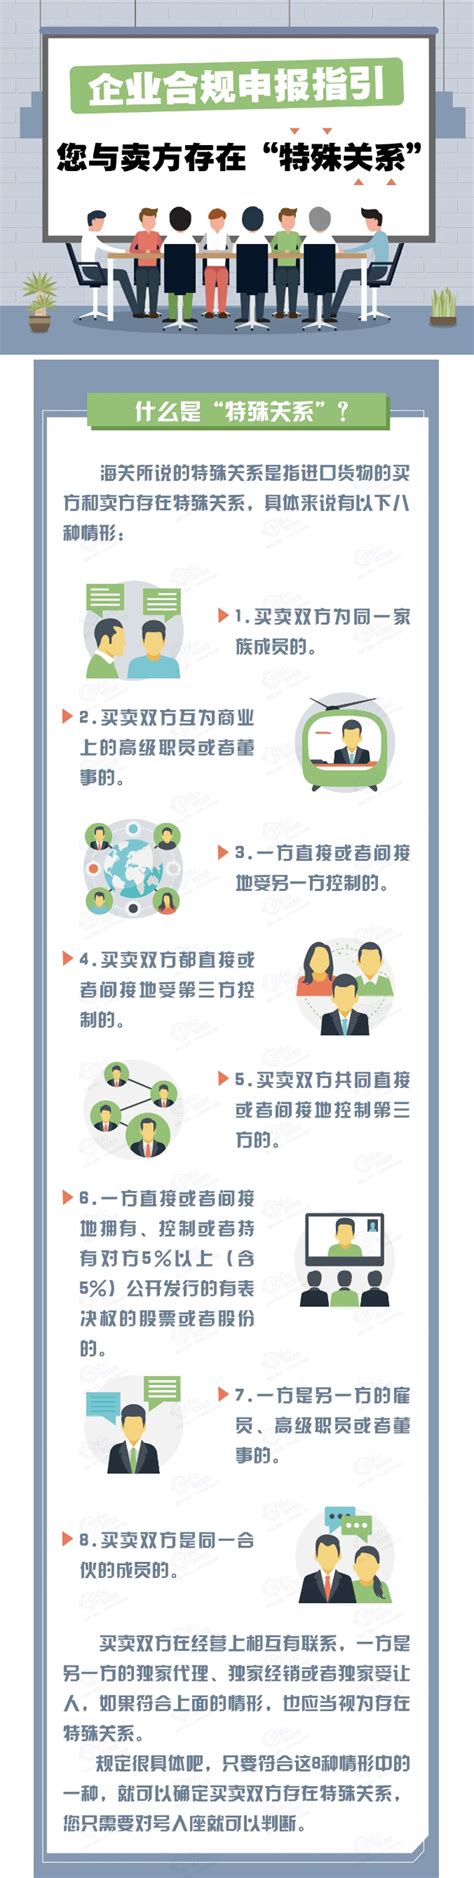 上海东展国际贸易有限公司-关税聚焦｜企业合规申报指引——您与卖方存在“特殊关系”